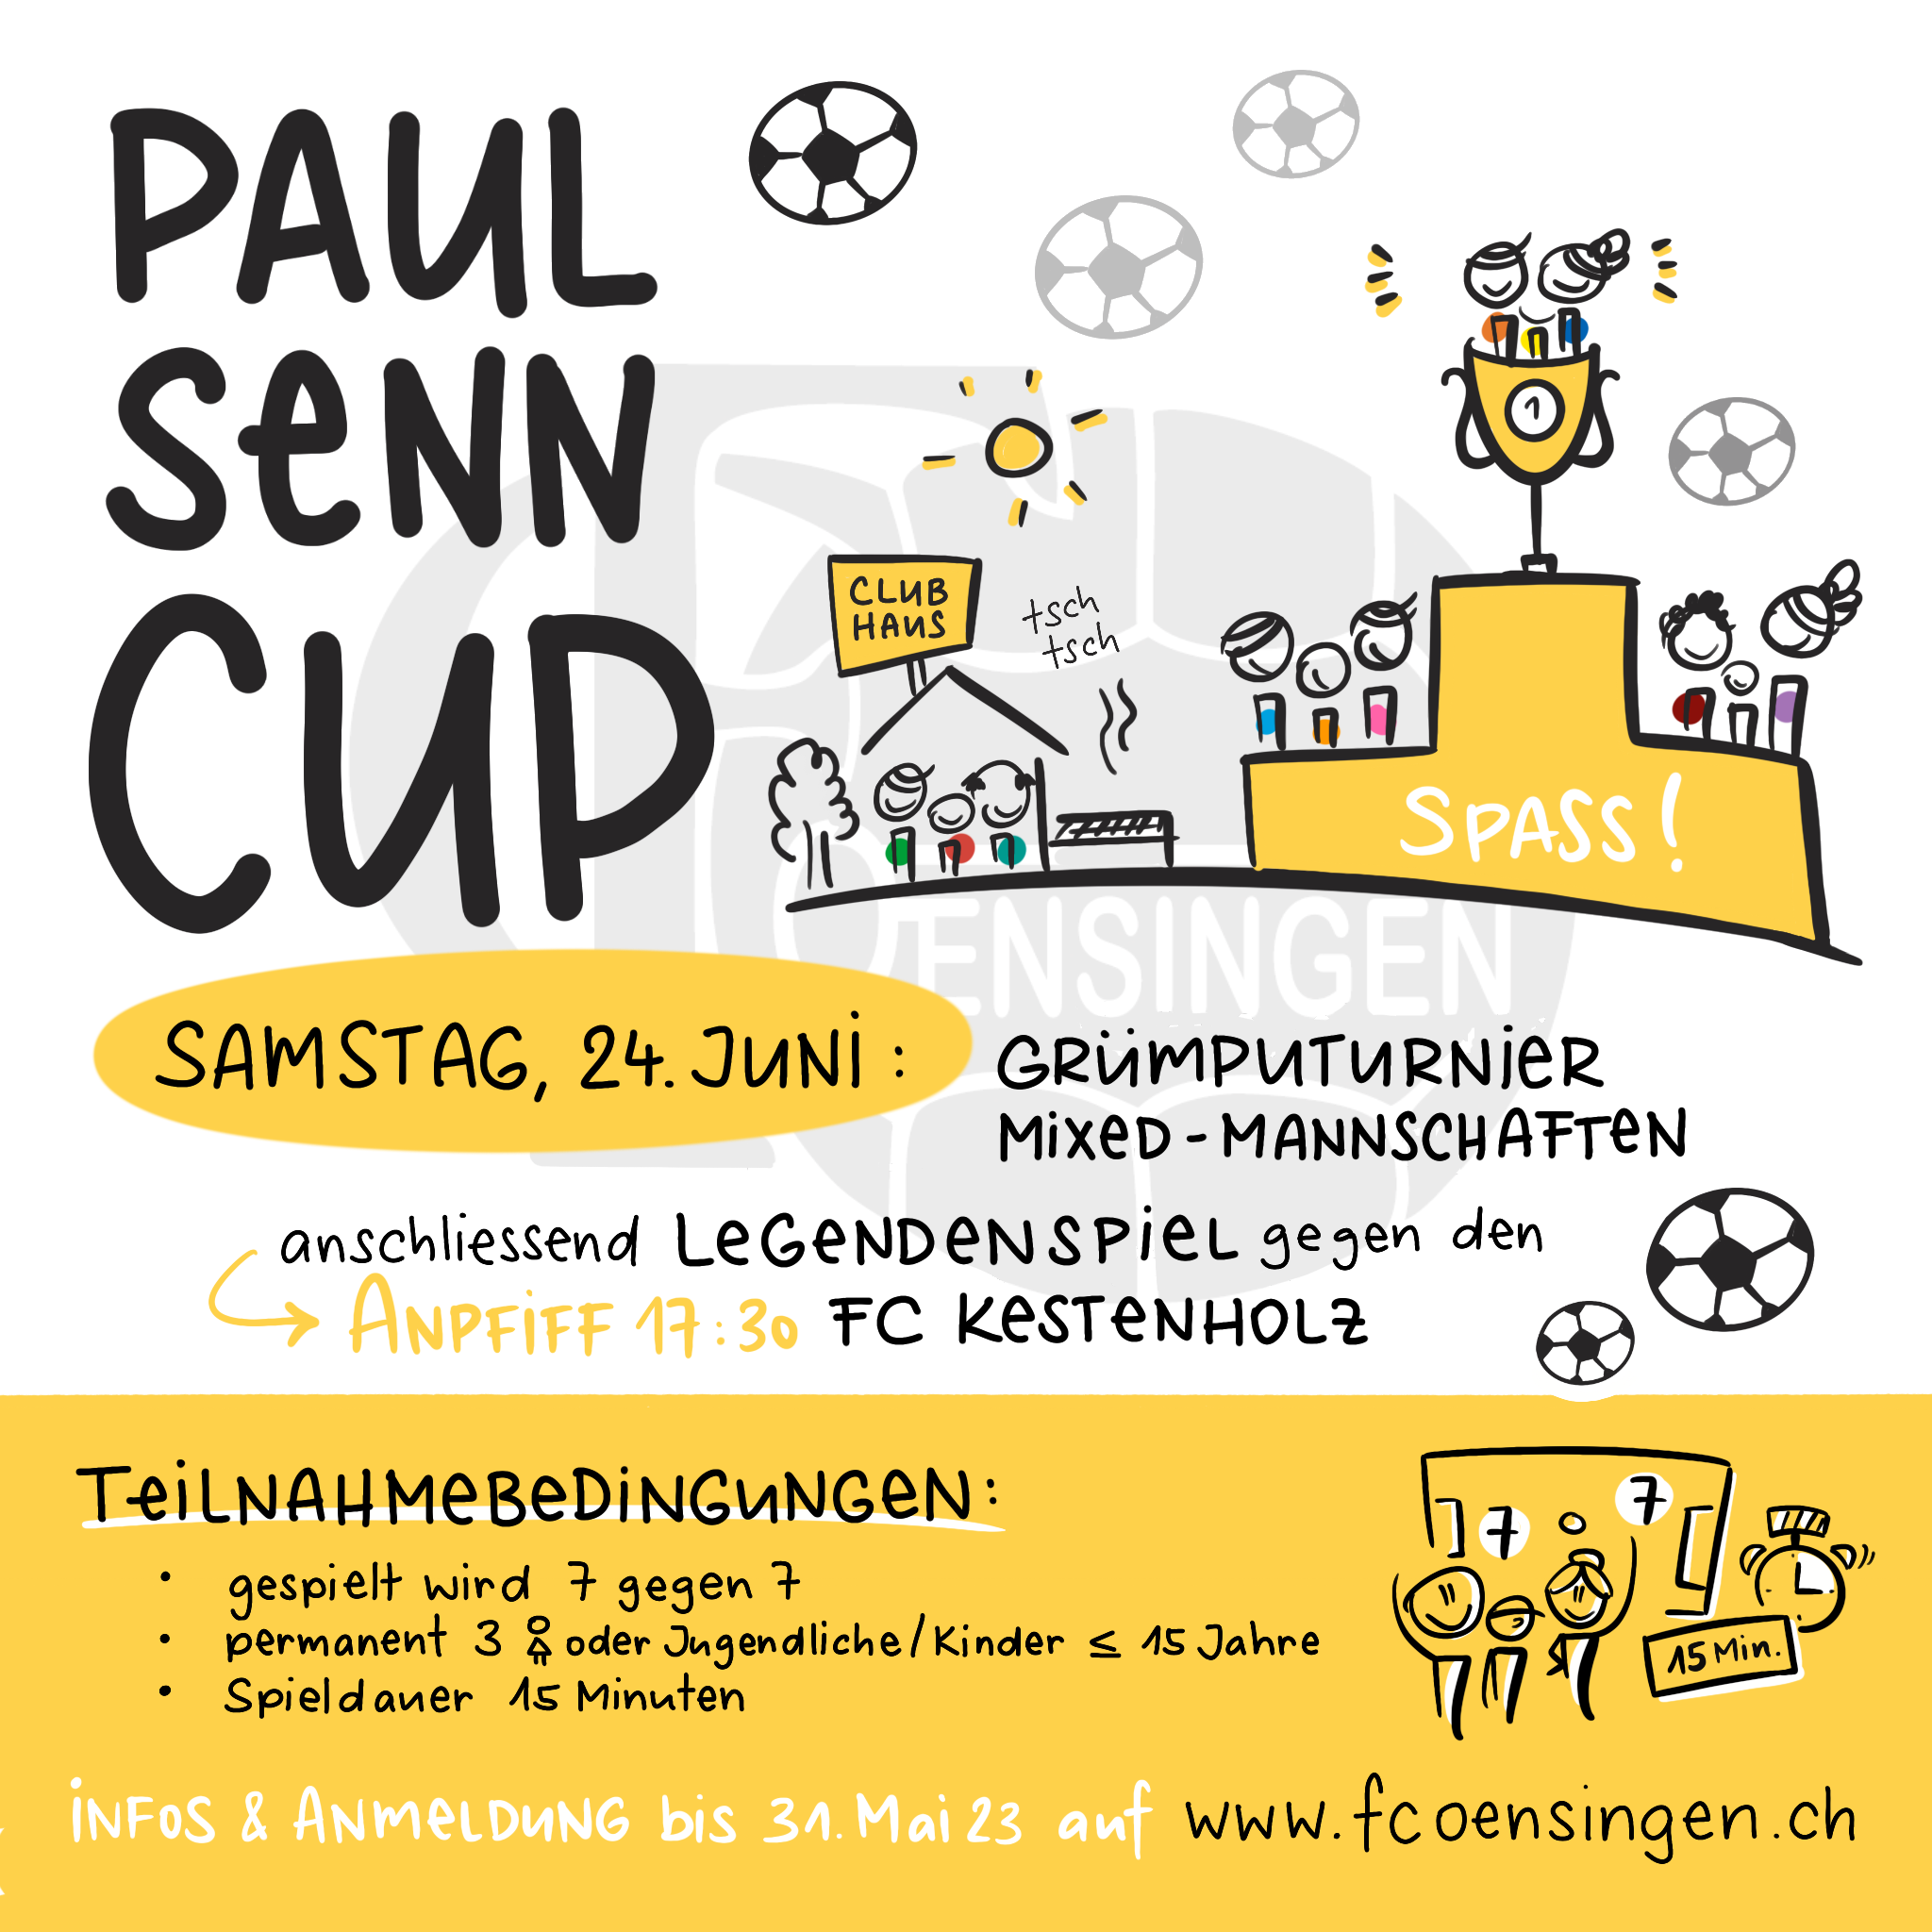 https://fcoensingen.ch/wp-content/uploads/2023/03/Paul_Senn_Cup_2023.png